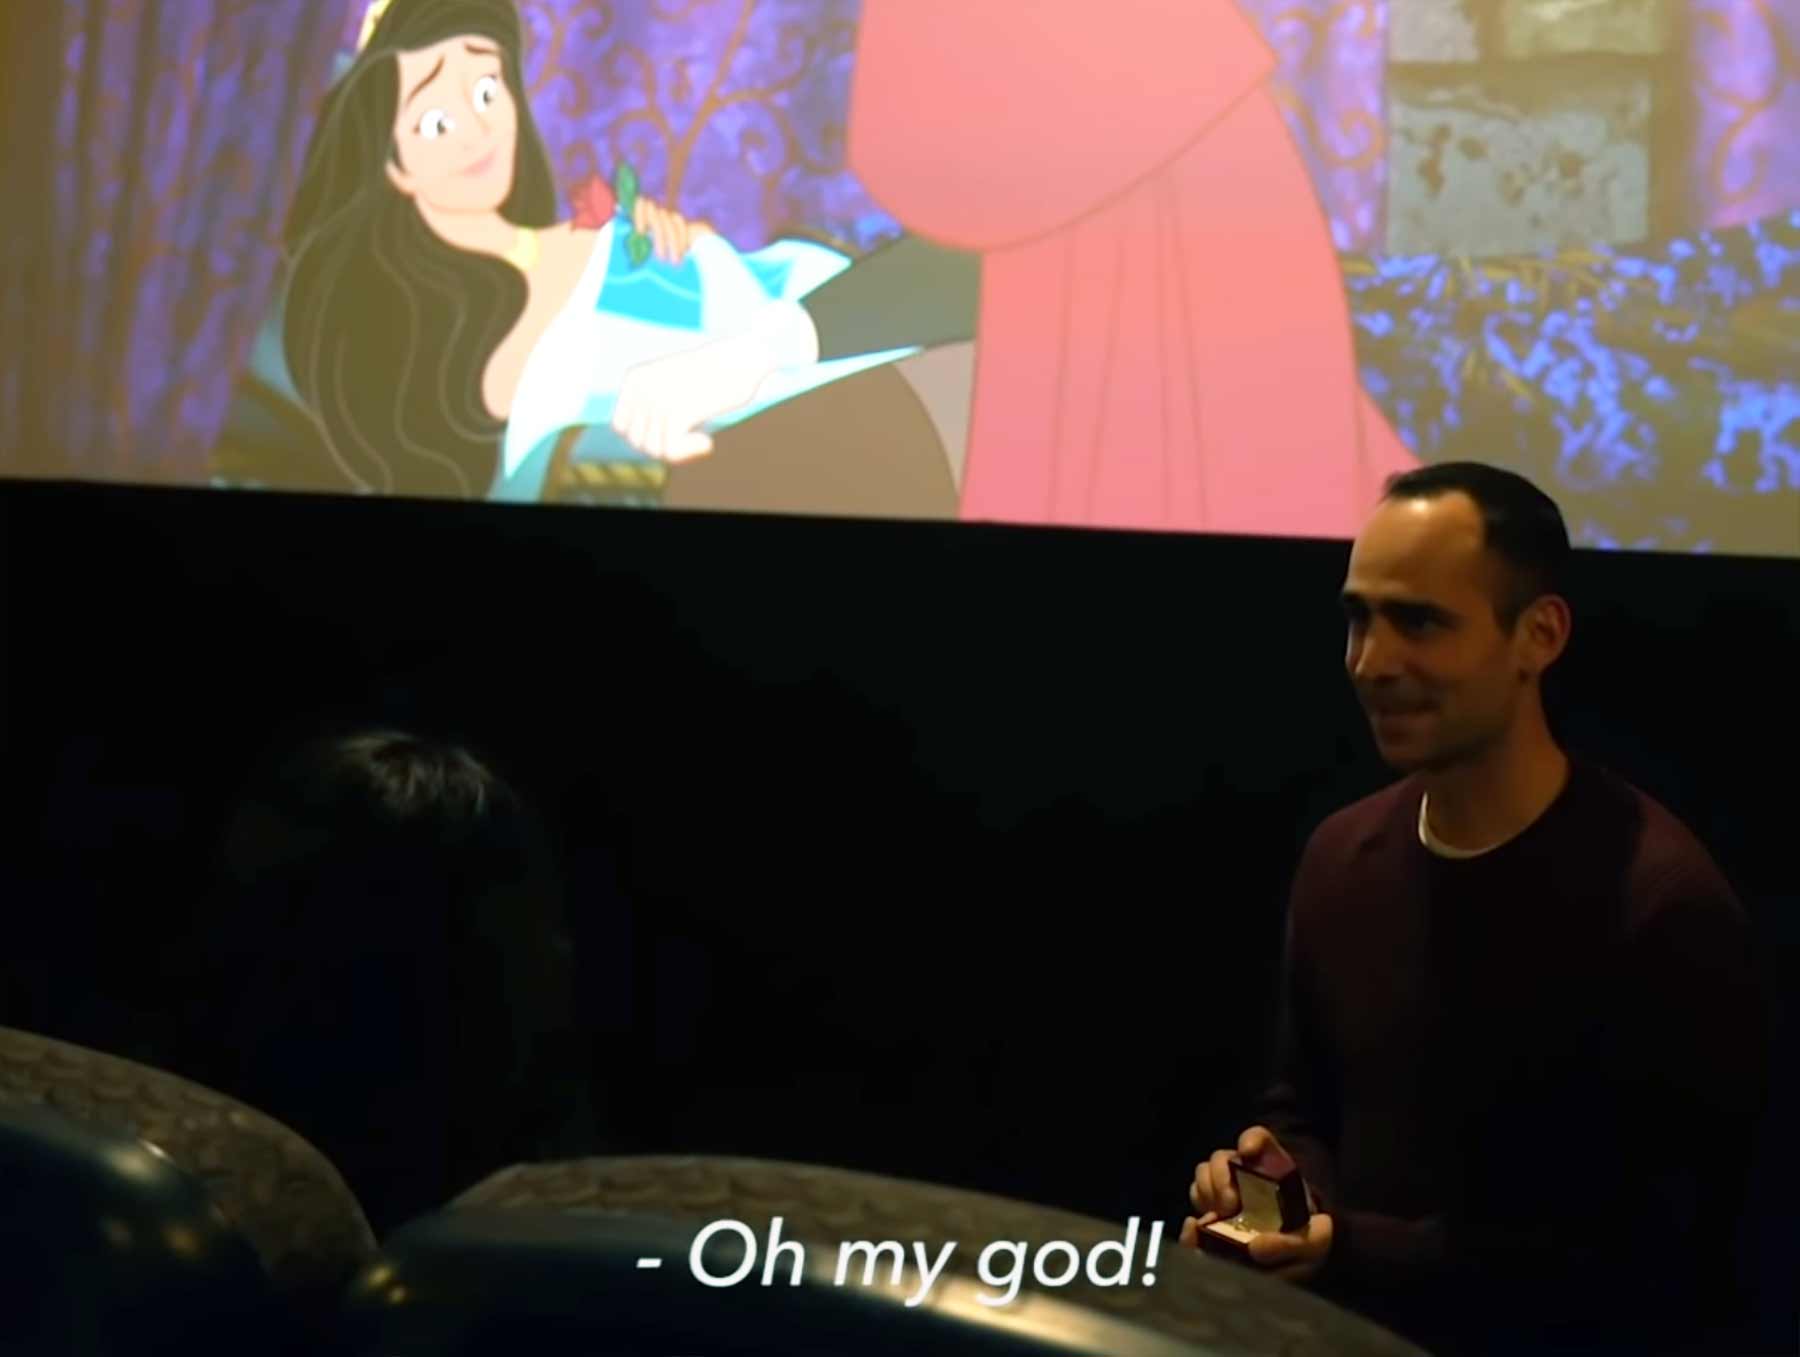 Mann animiert "Dornröschen"-Film zum Heiratsantrag um antrag-mittels-disney-film-im-kino 